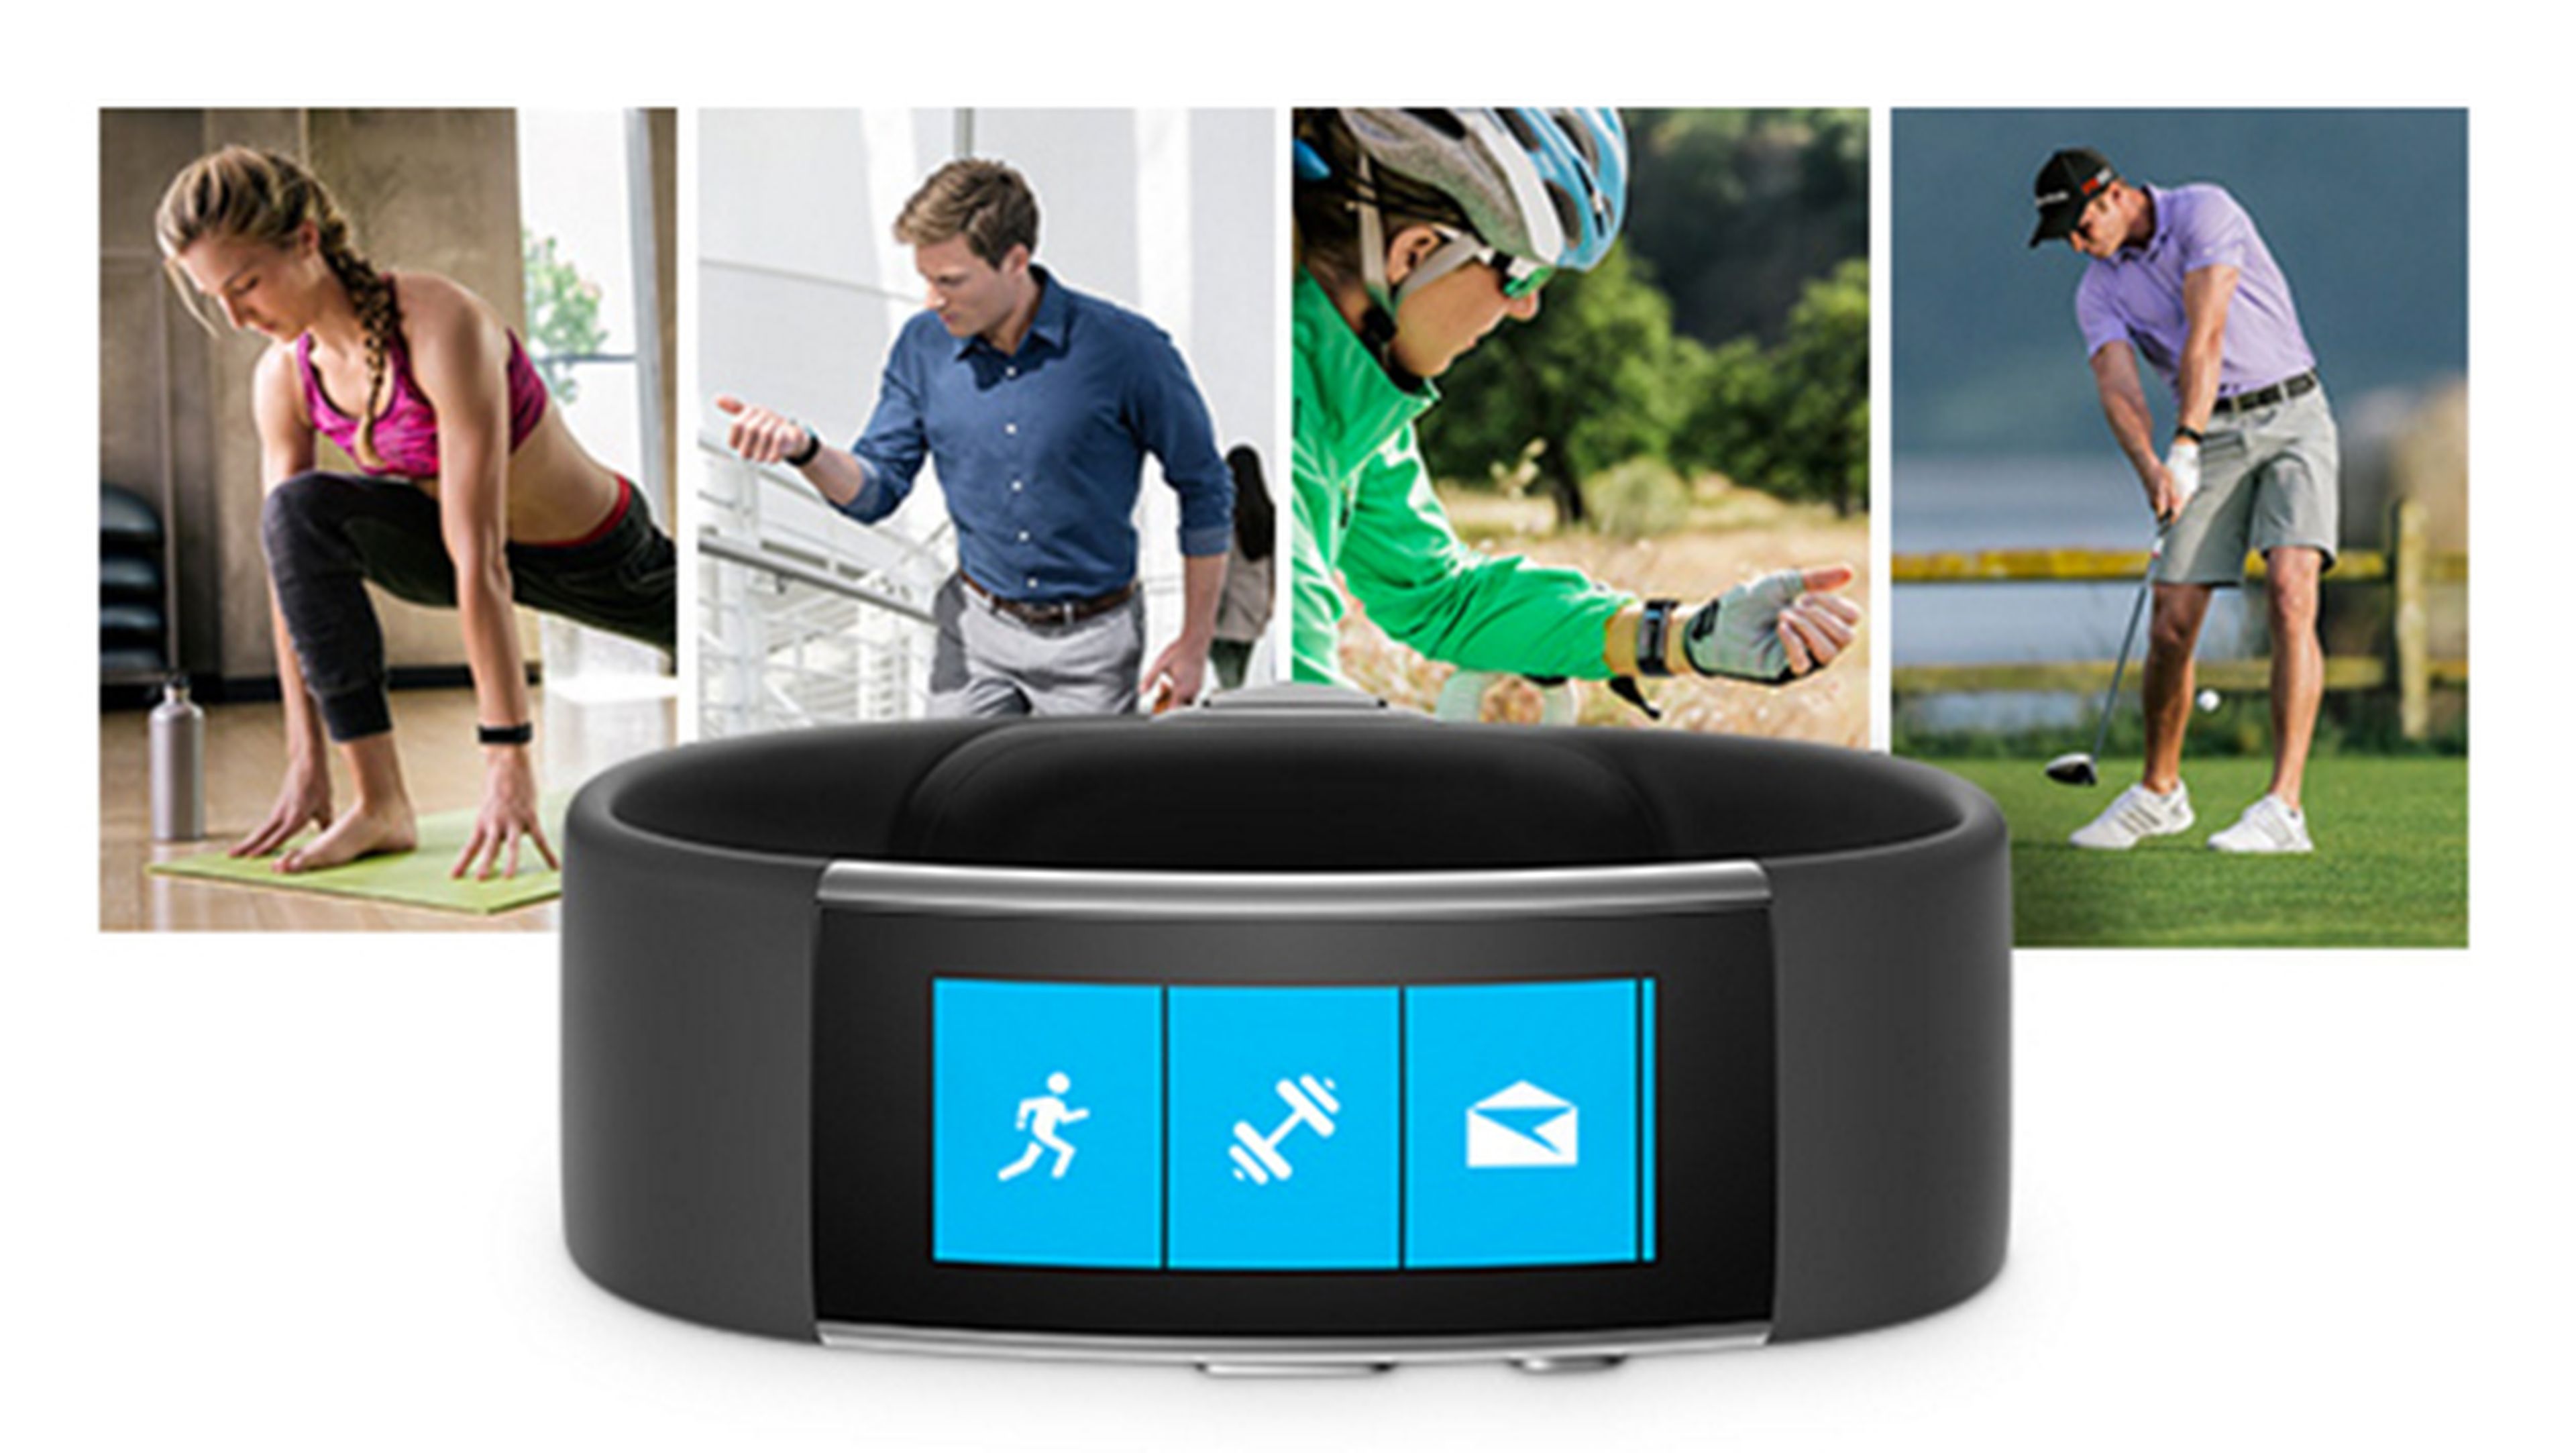 Microsoft Band 2 smartband pulsera inteligente 2015